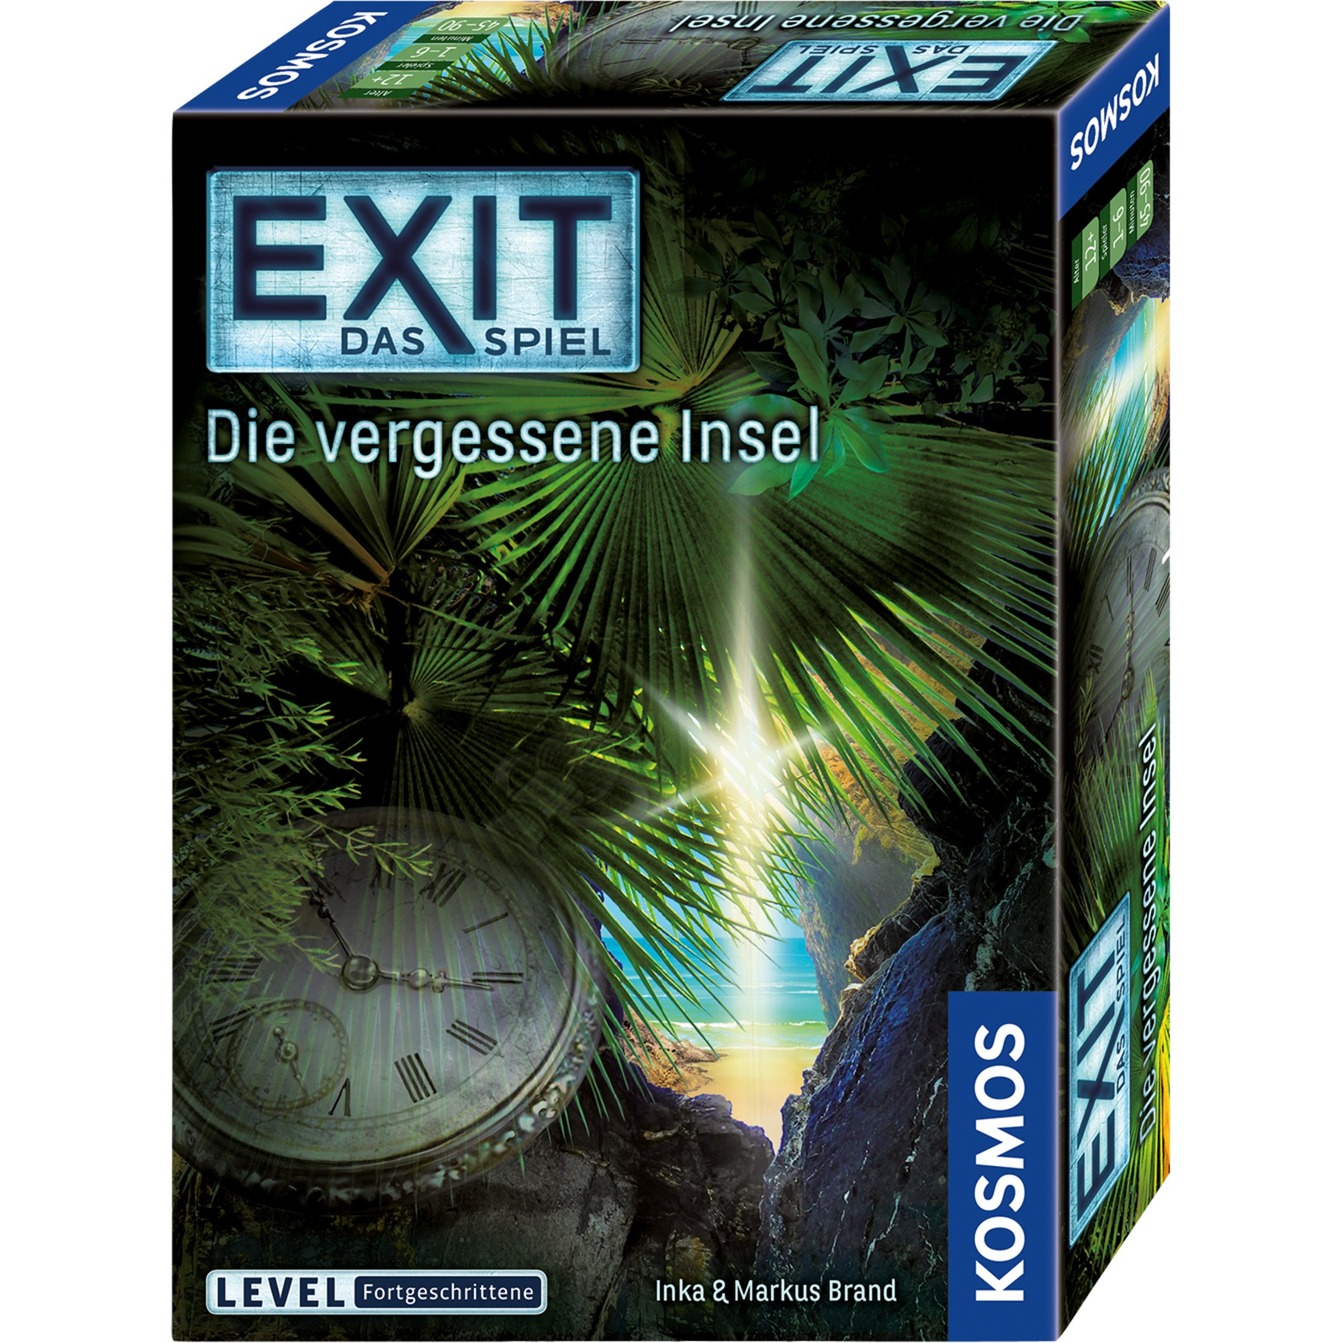 Image of Alternate - EXIT - Das Spiel - Die vergessene Insel, Partyspiel online einkaufen bei Alternate